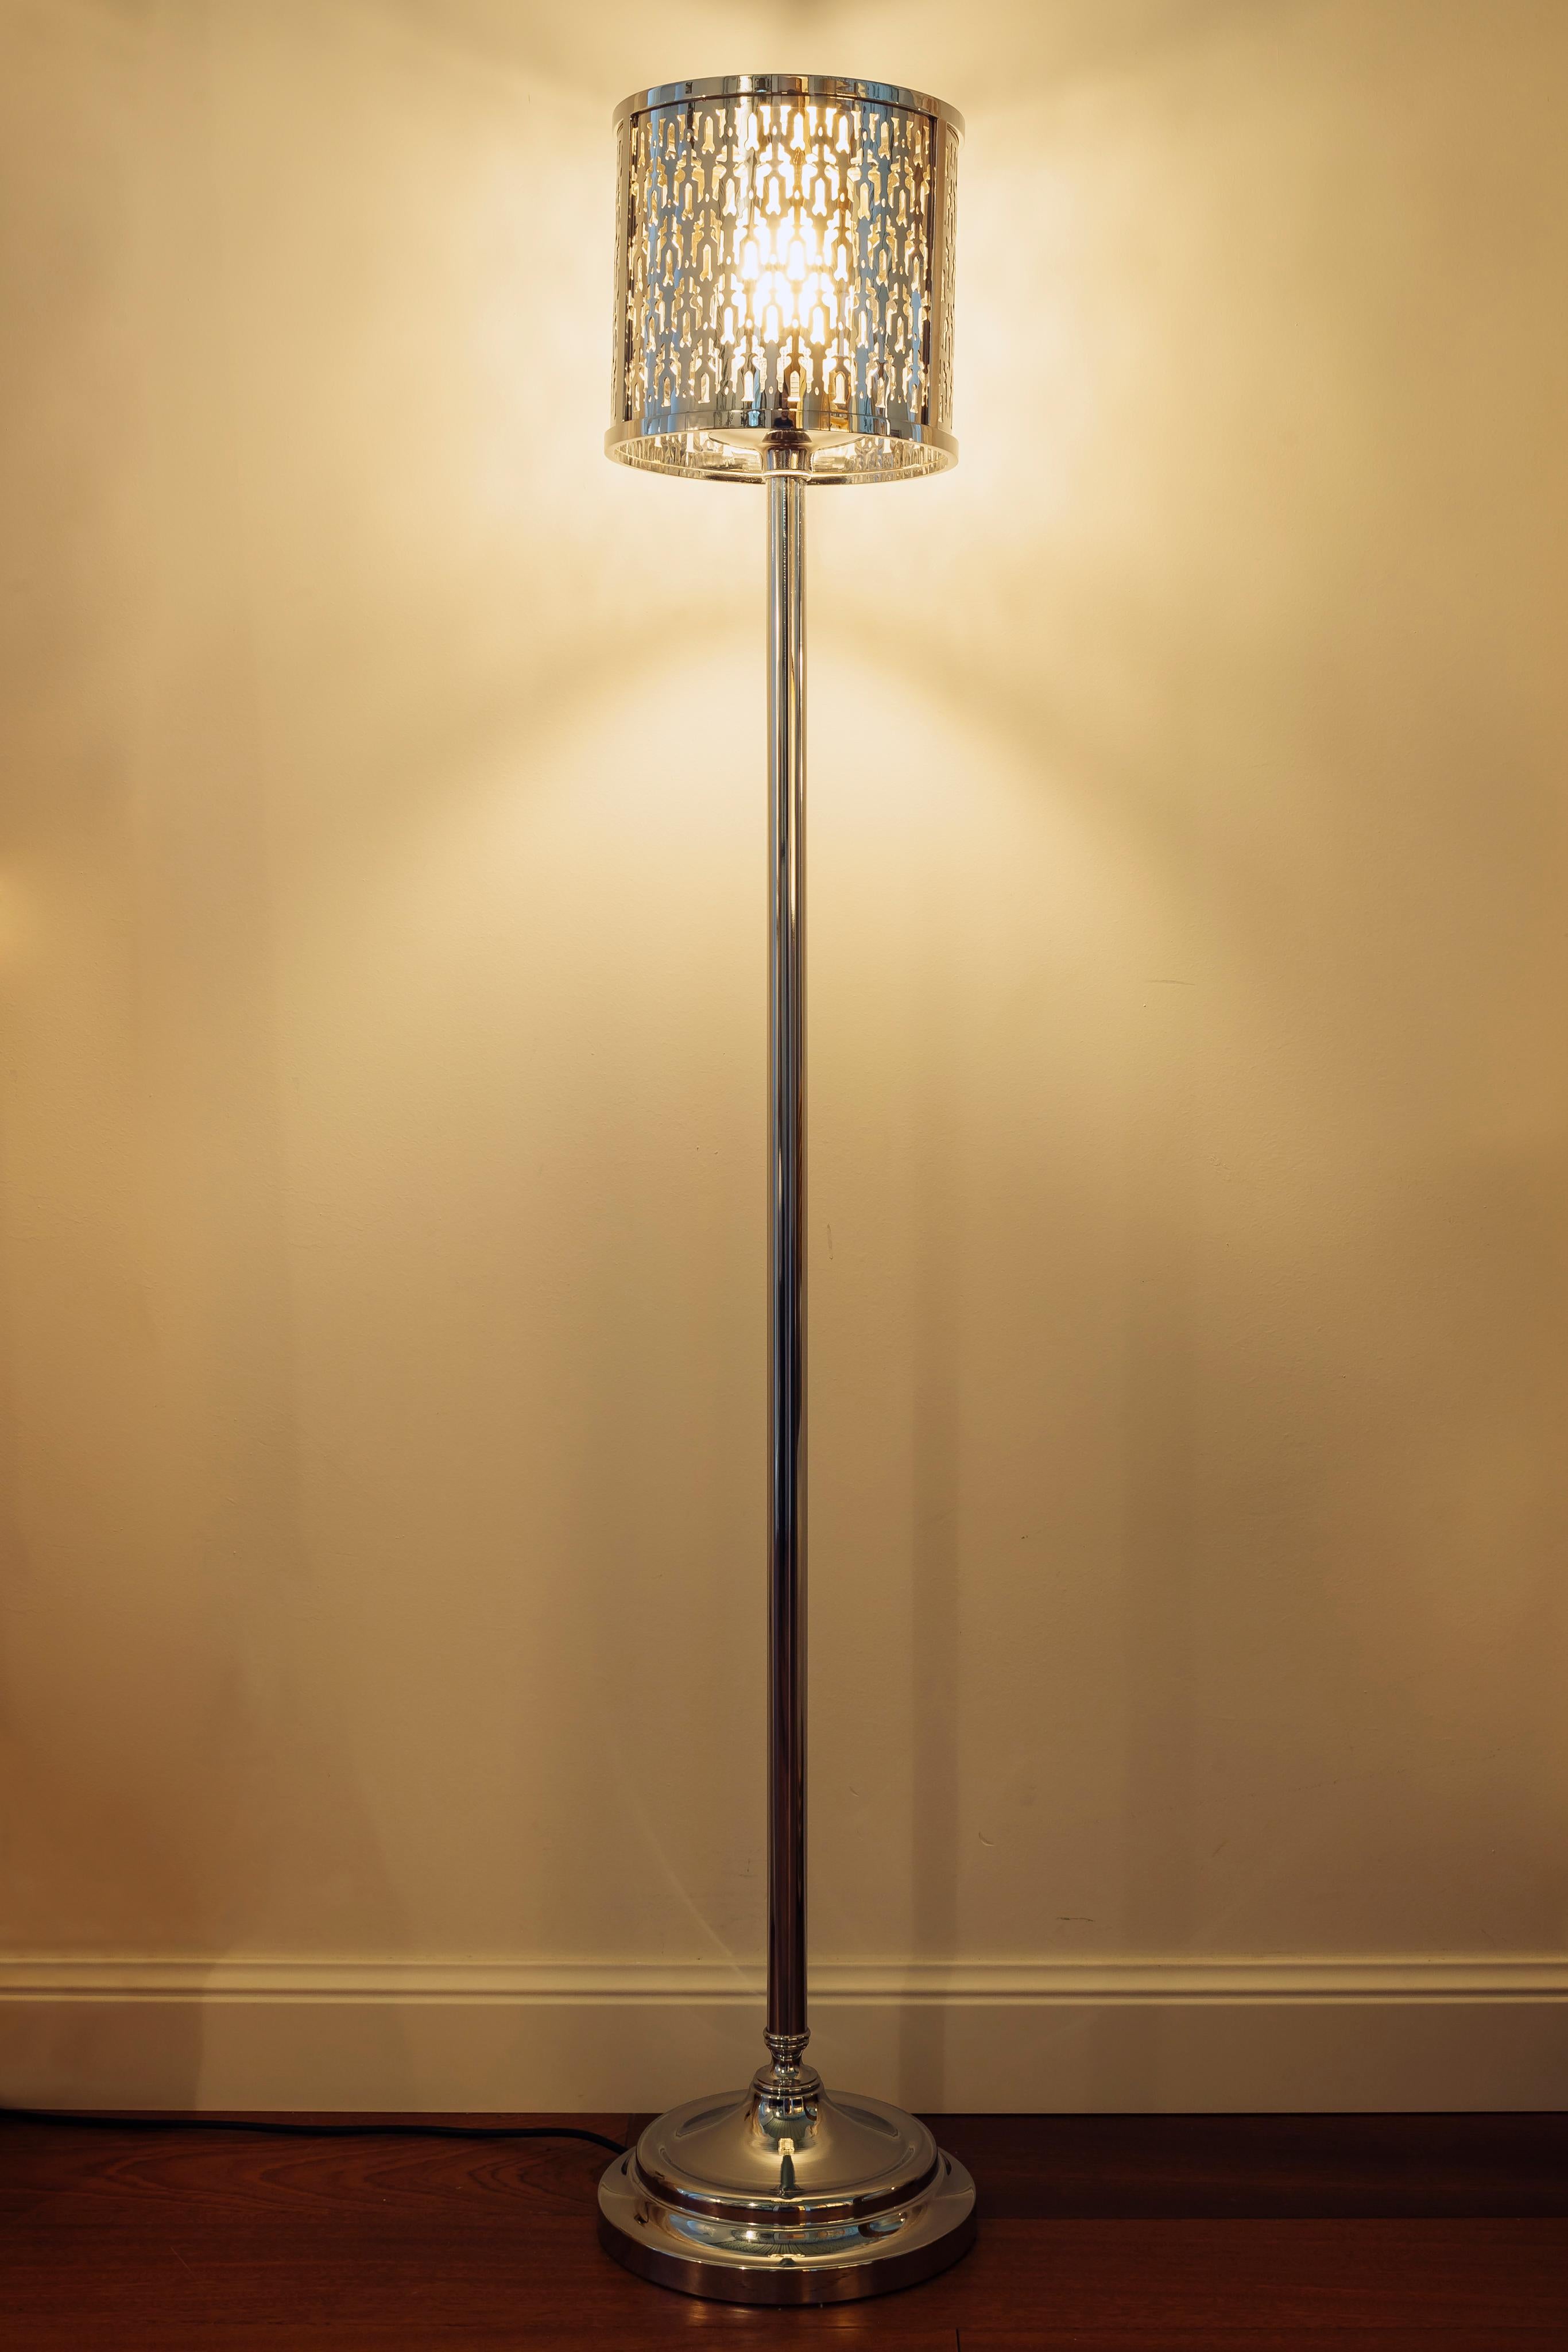 Studio 230 lampadaire en laiton croisé avec abat-jour découpé au laser style arabe. Il s'agit de la collection Timeless dans laquelle coexistent des objets, des lampes et des meubles classiques et des pièces réinterprétées sous des formes plus